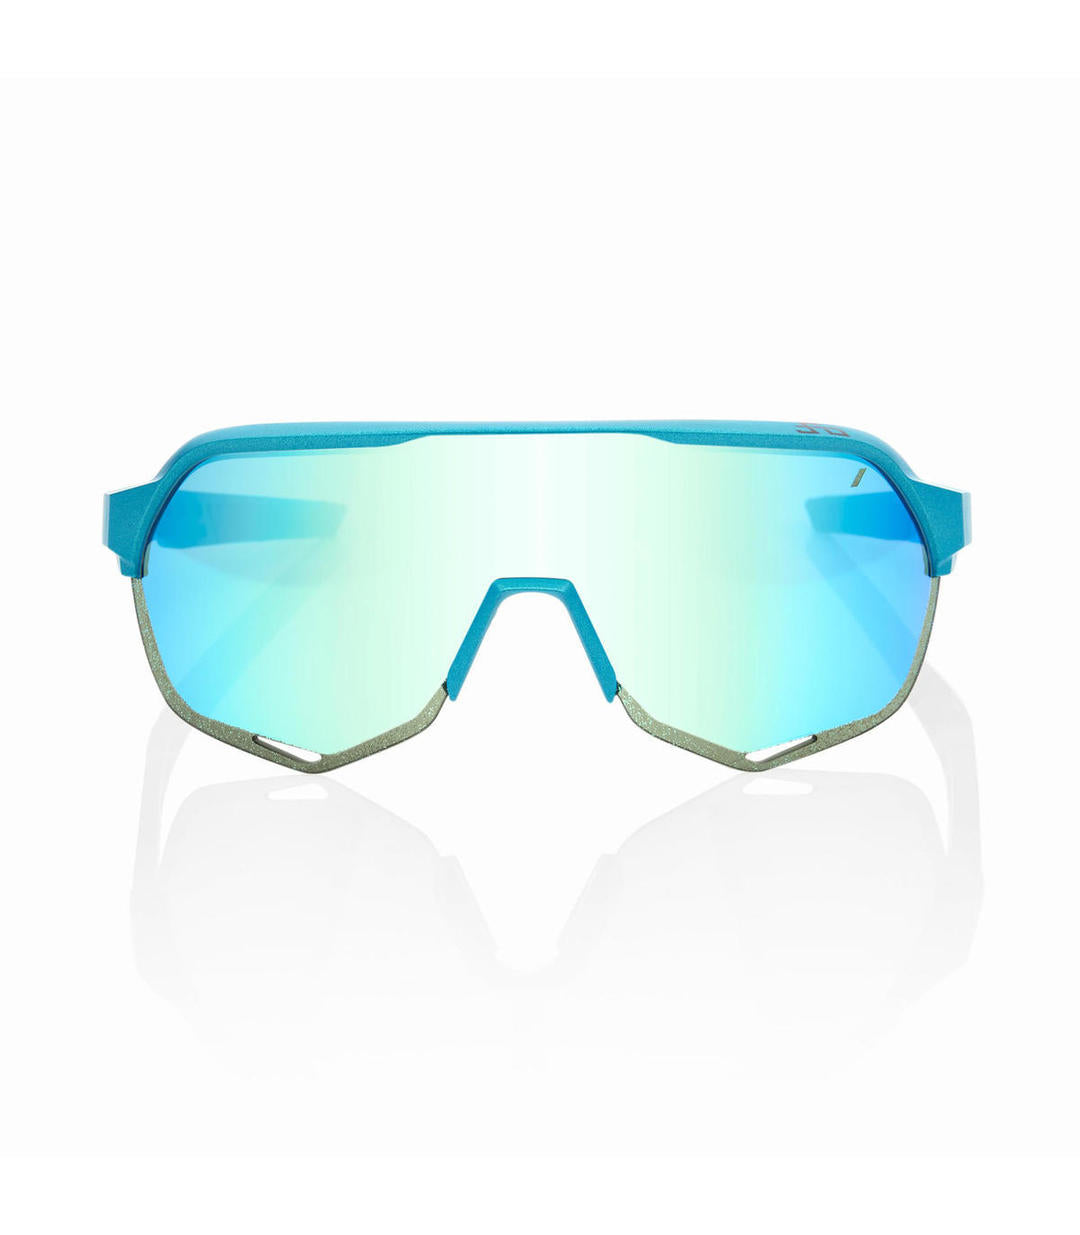 RIDE 100% Gafas de Sol S2 Peter Sagan LE Blue Topaz Multilayer - Azul Topacio